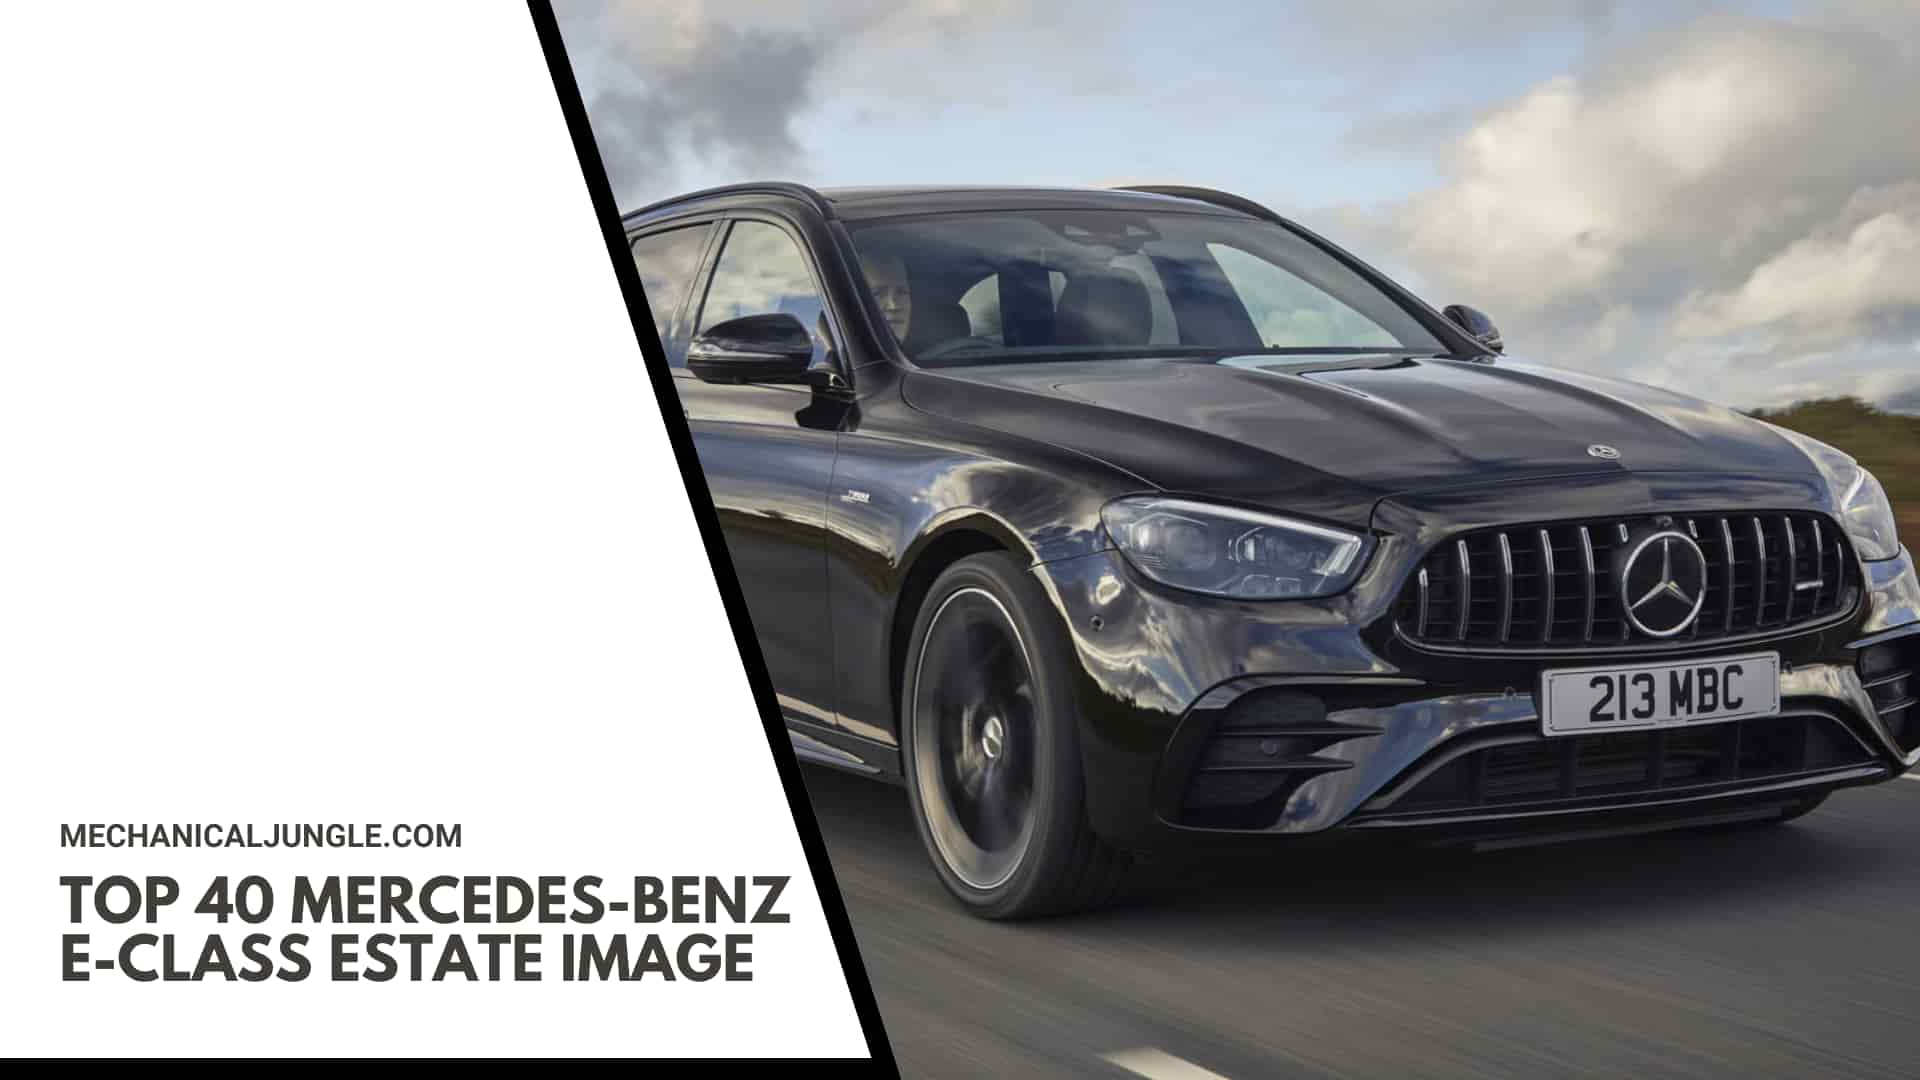 Top 40 Mercedes-Benz E-Class Estate Image